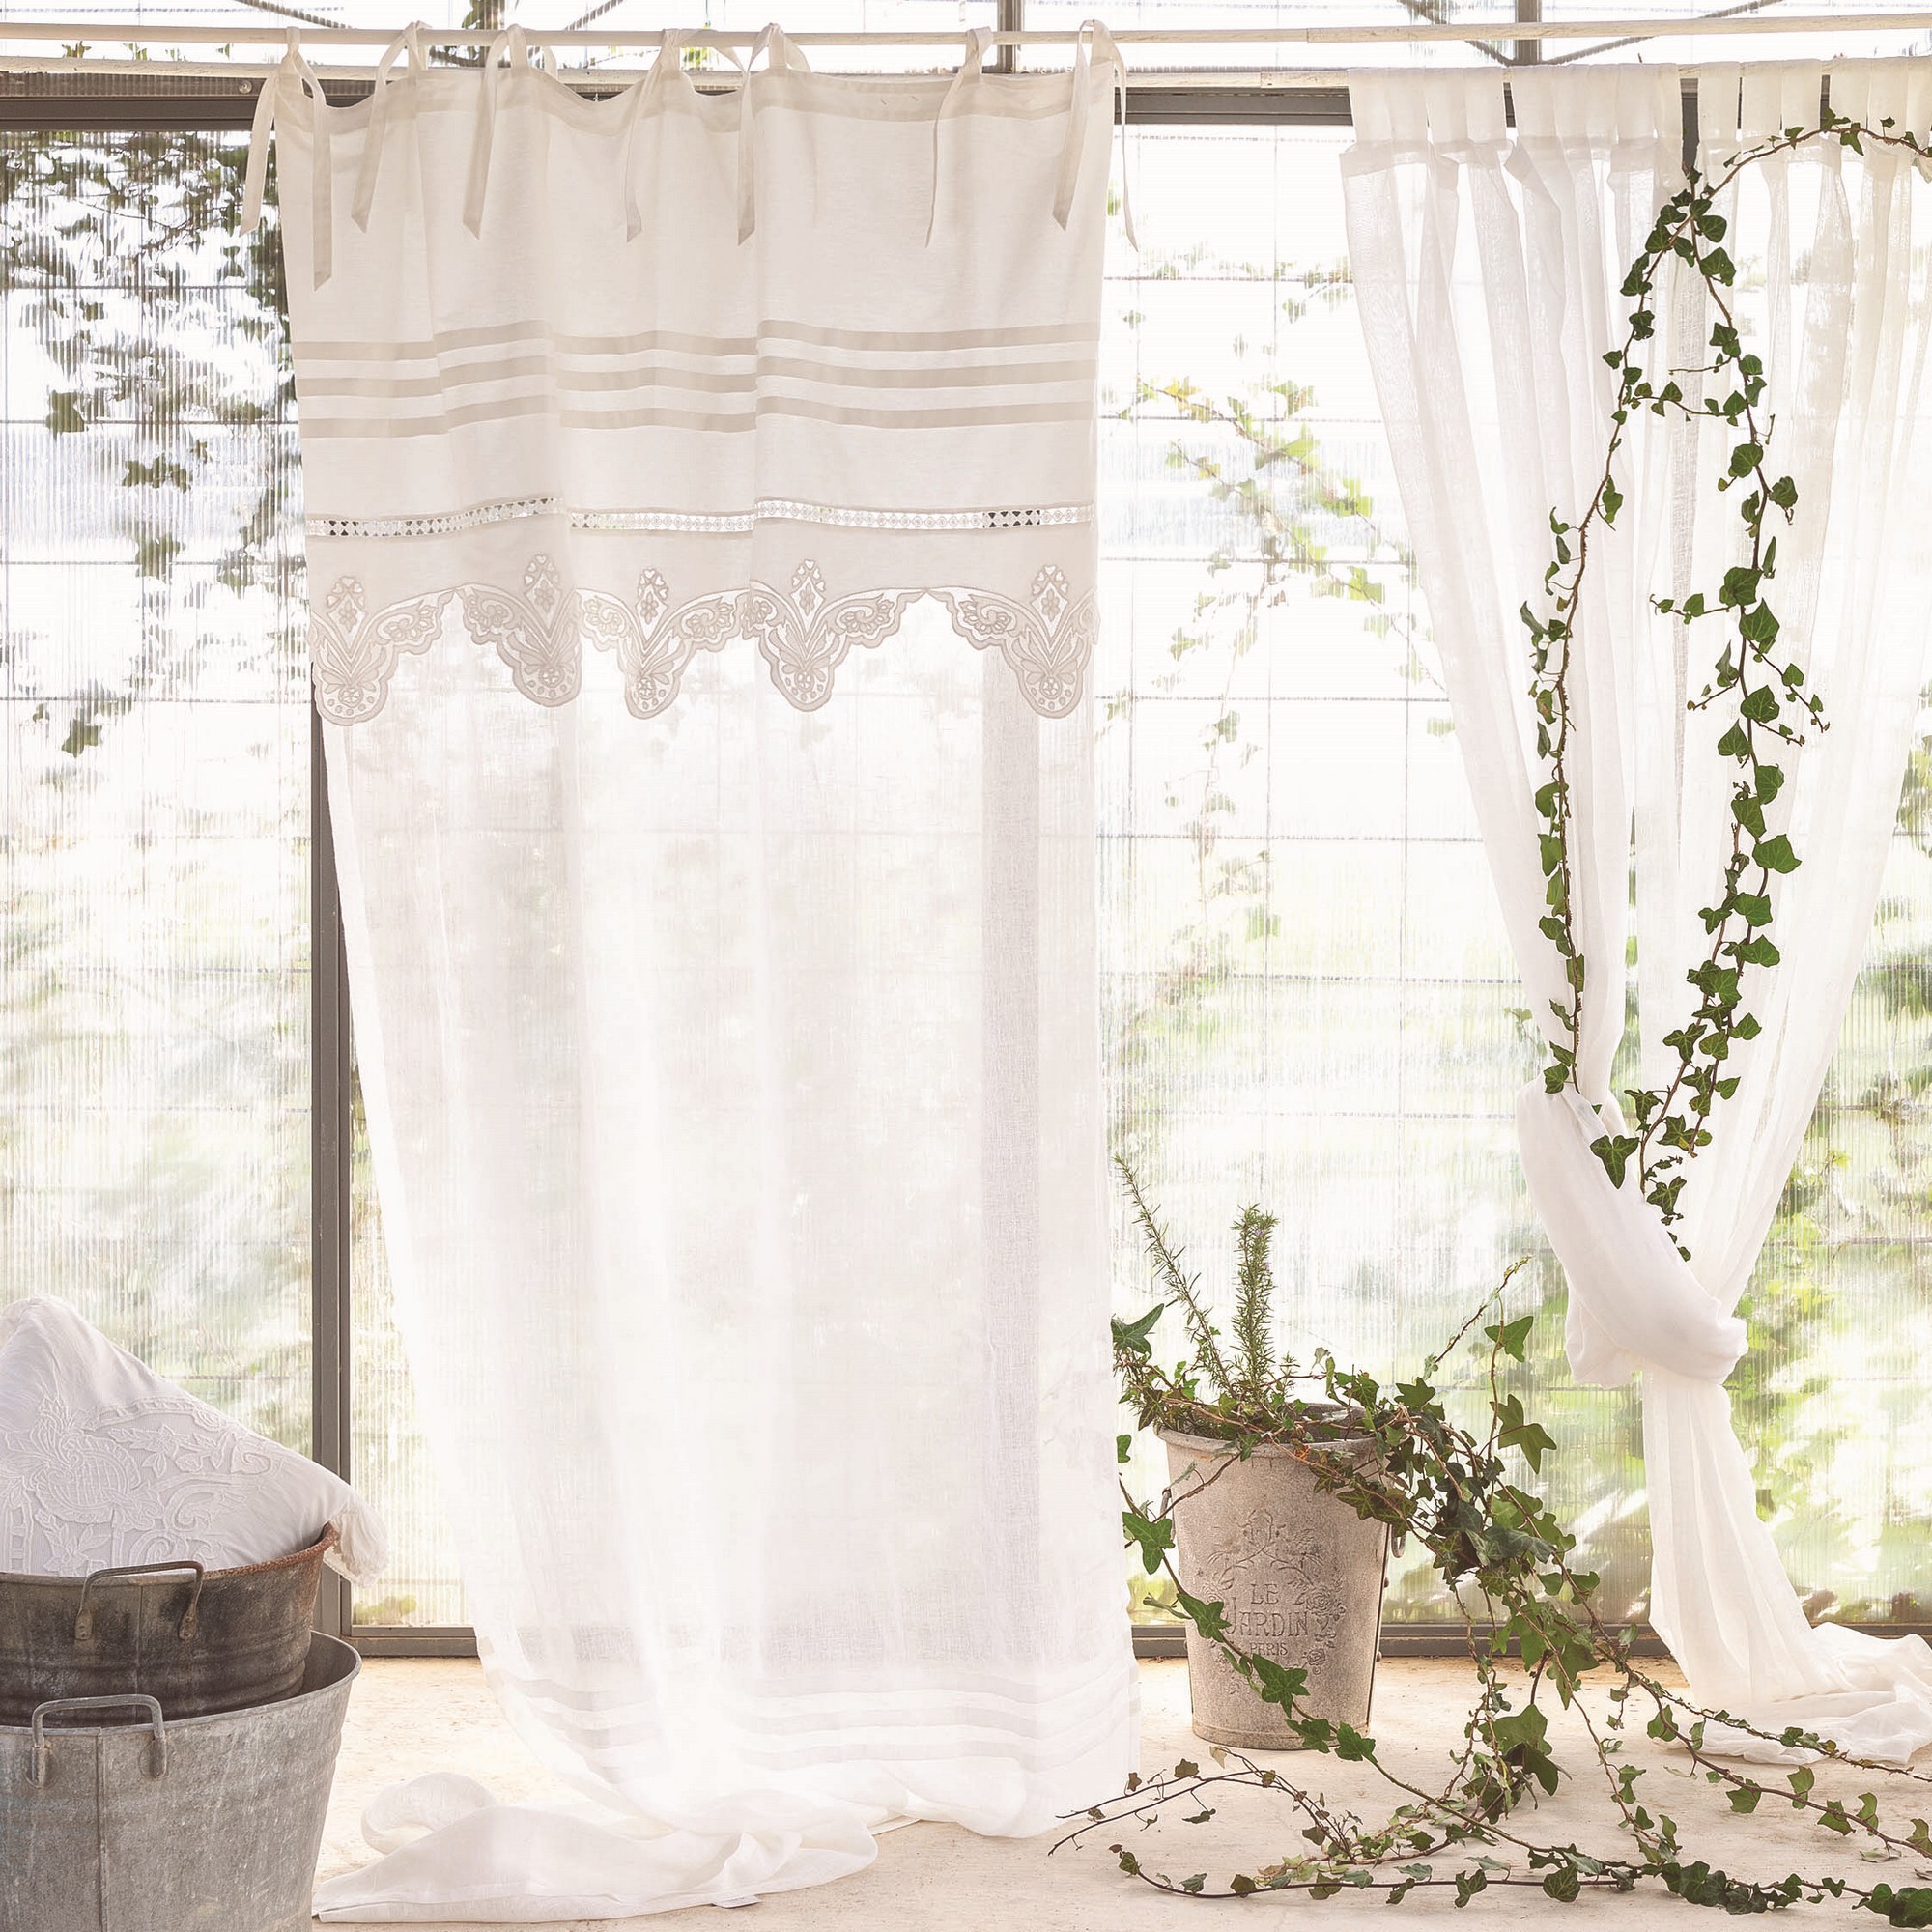 Tenda misto lino con volant colore beige 140x290cm. Blanc Mariclo' – MIRIAM  HOME: Shabby Chic & Country Style